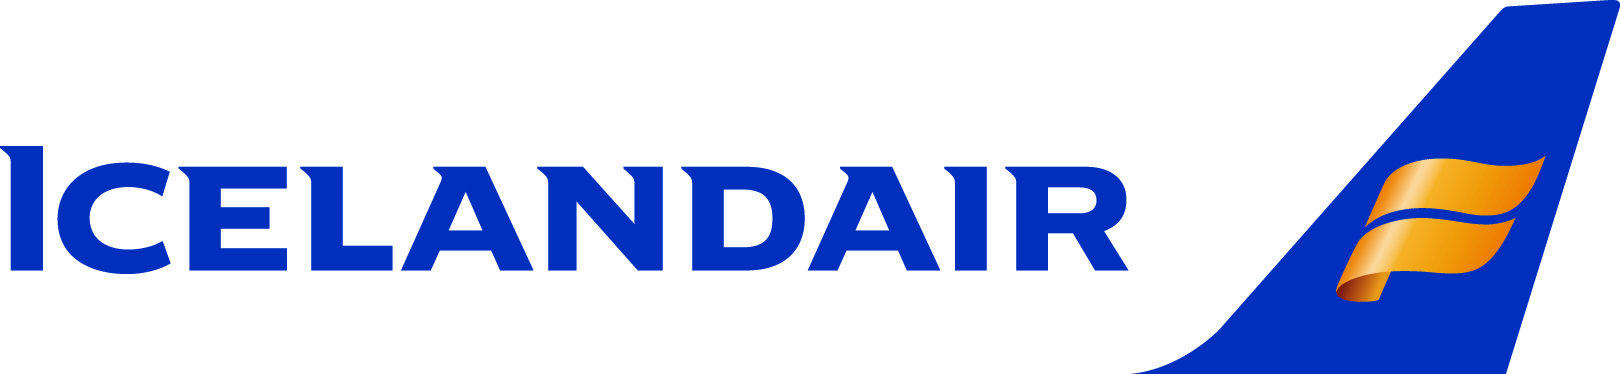 Icelandair-logo